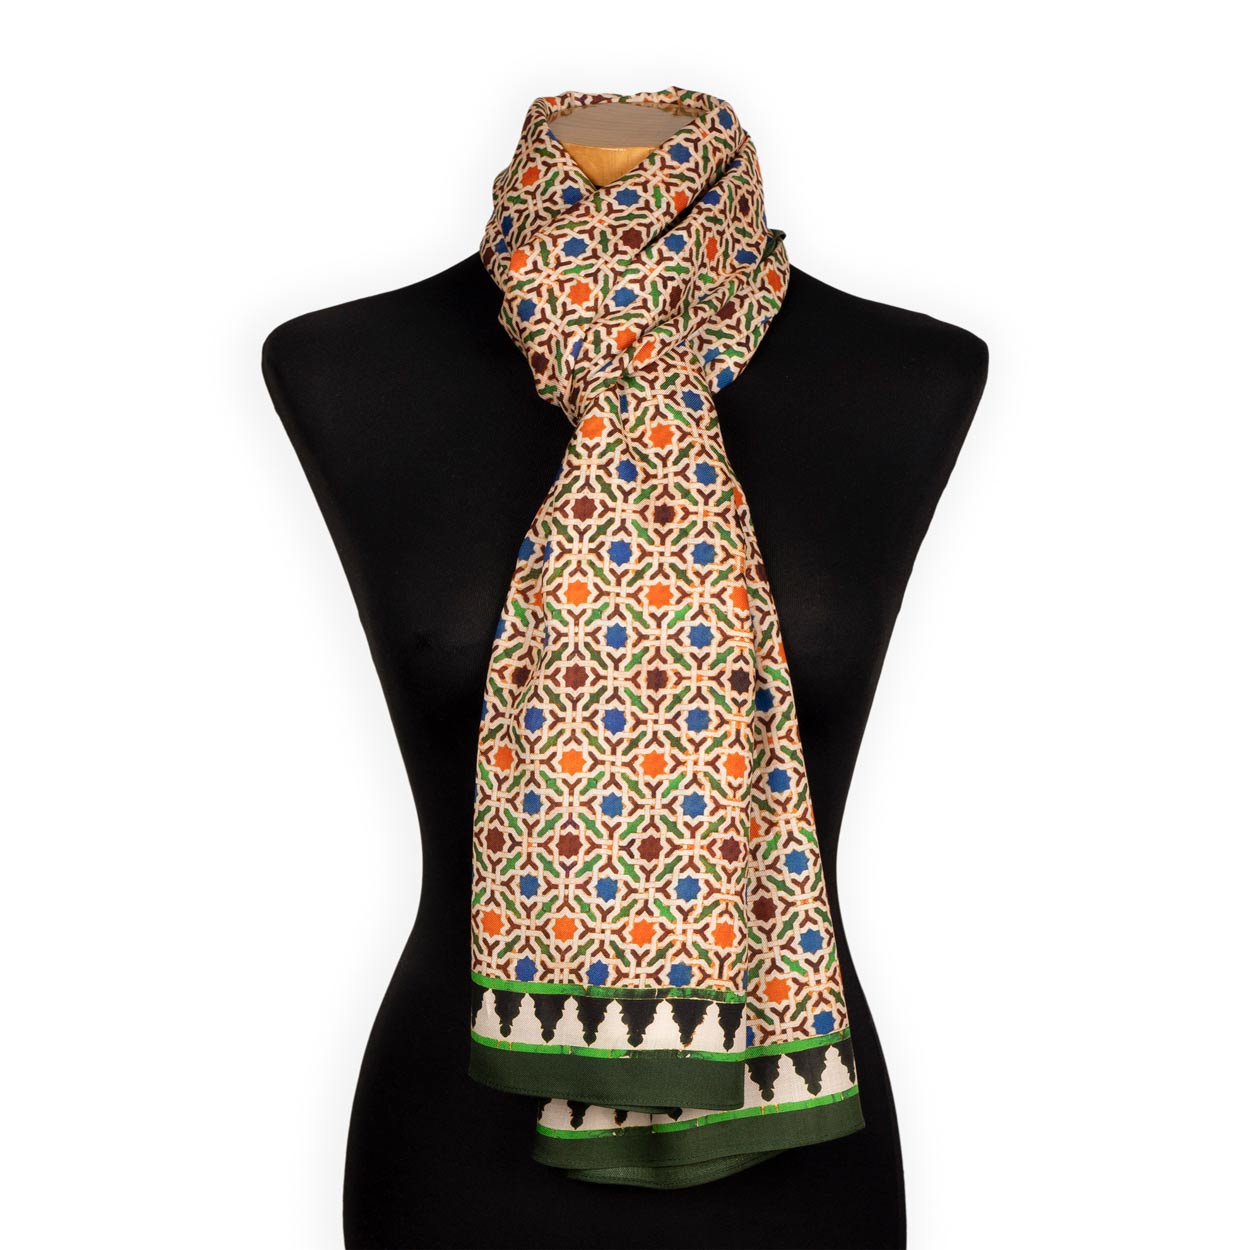 Pañuelo para el cuello grande inspirado en los azulejos de Marruecos